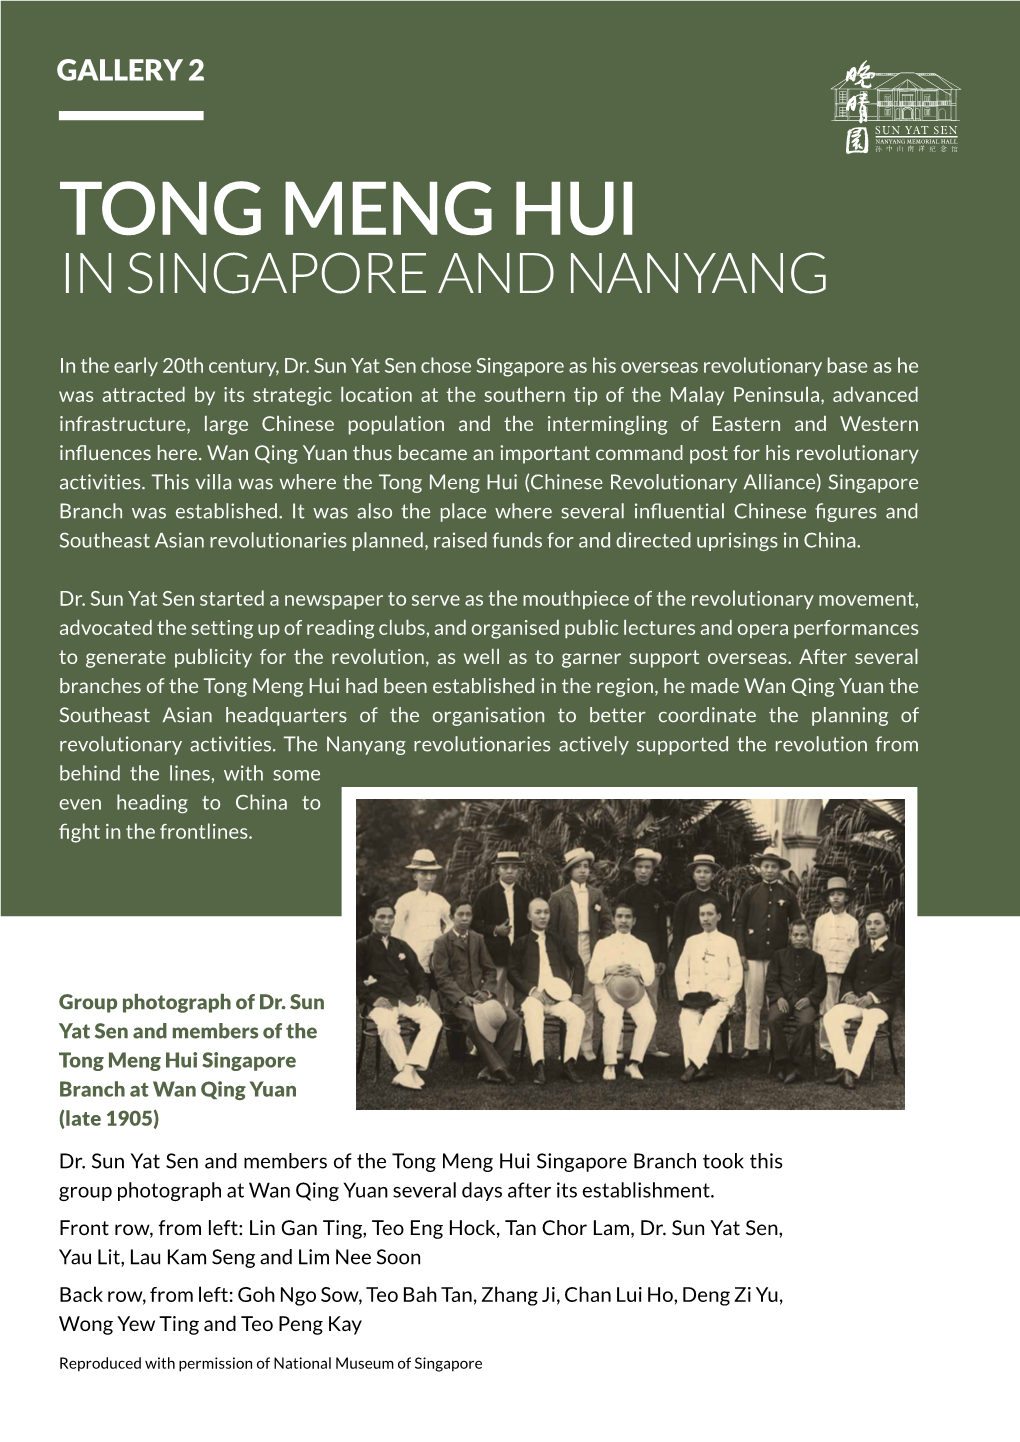 Tong Meng Hui in Singapore and Nanyang